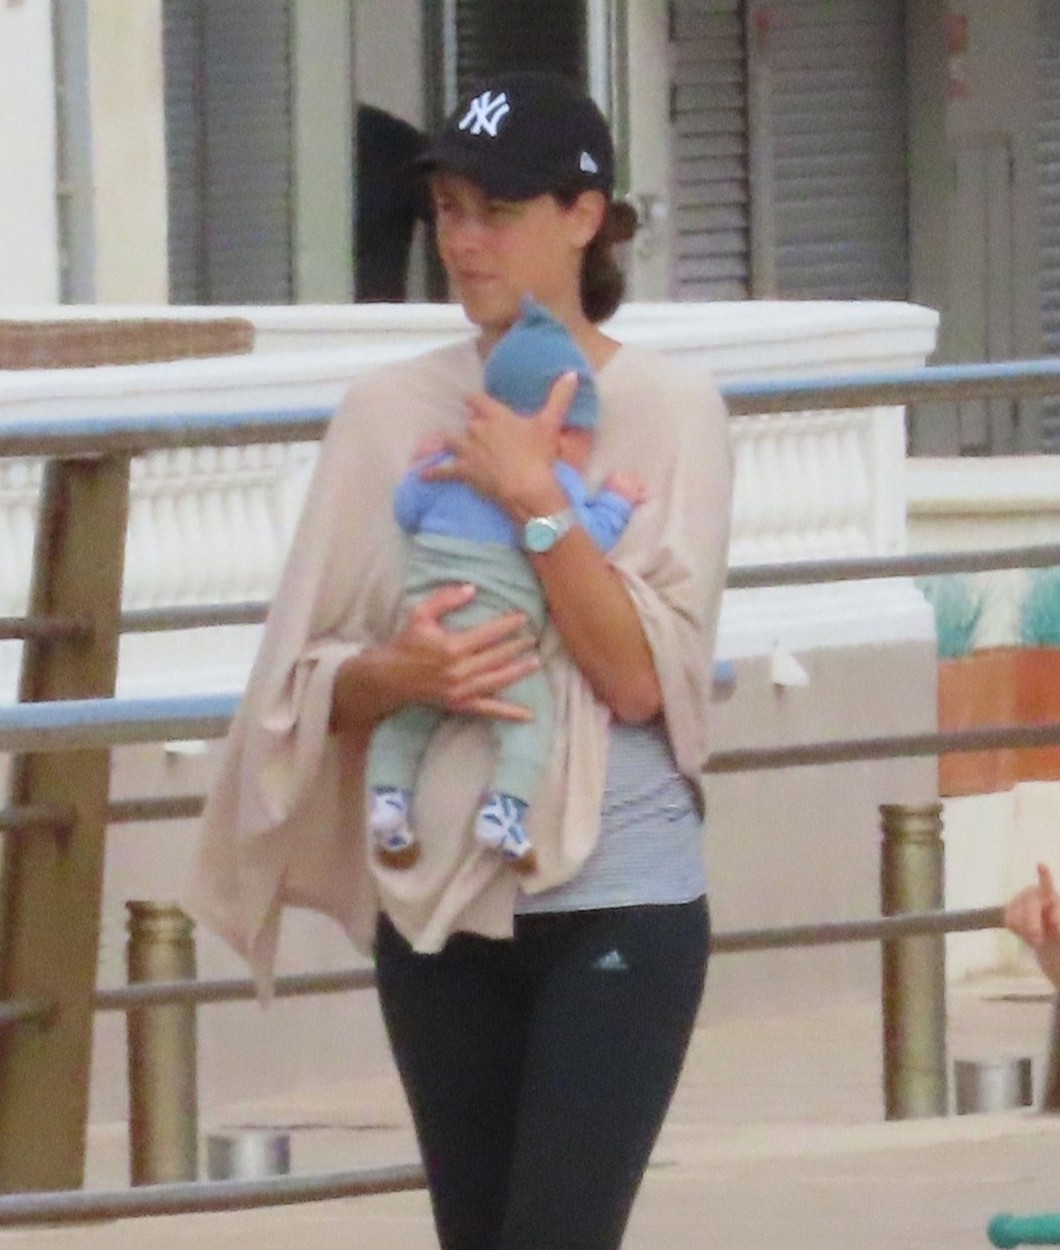 Prve fotke Ane Ivanović sa bebom: U porodičnoj šetnji 20 dana nakon porođaja